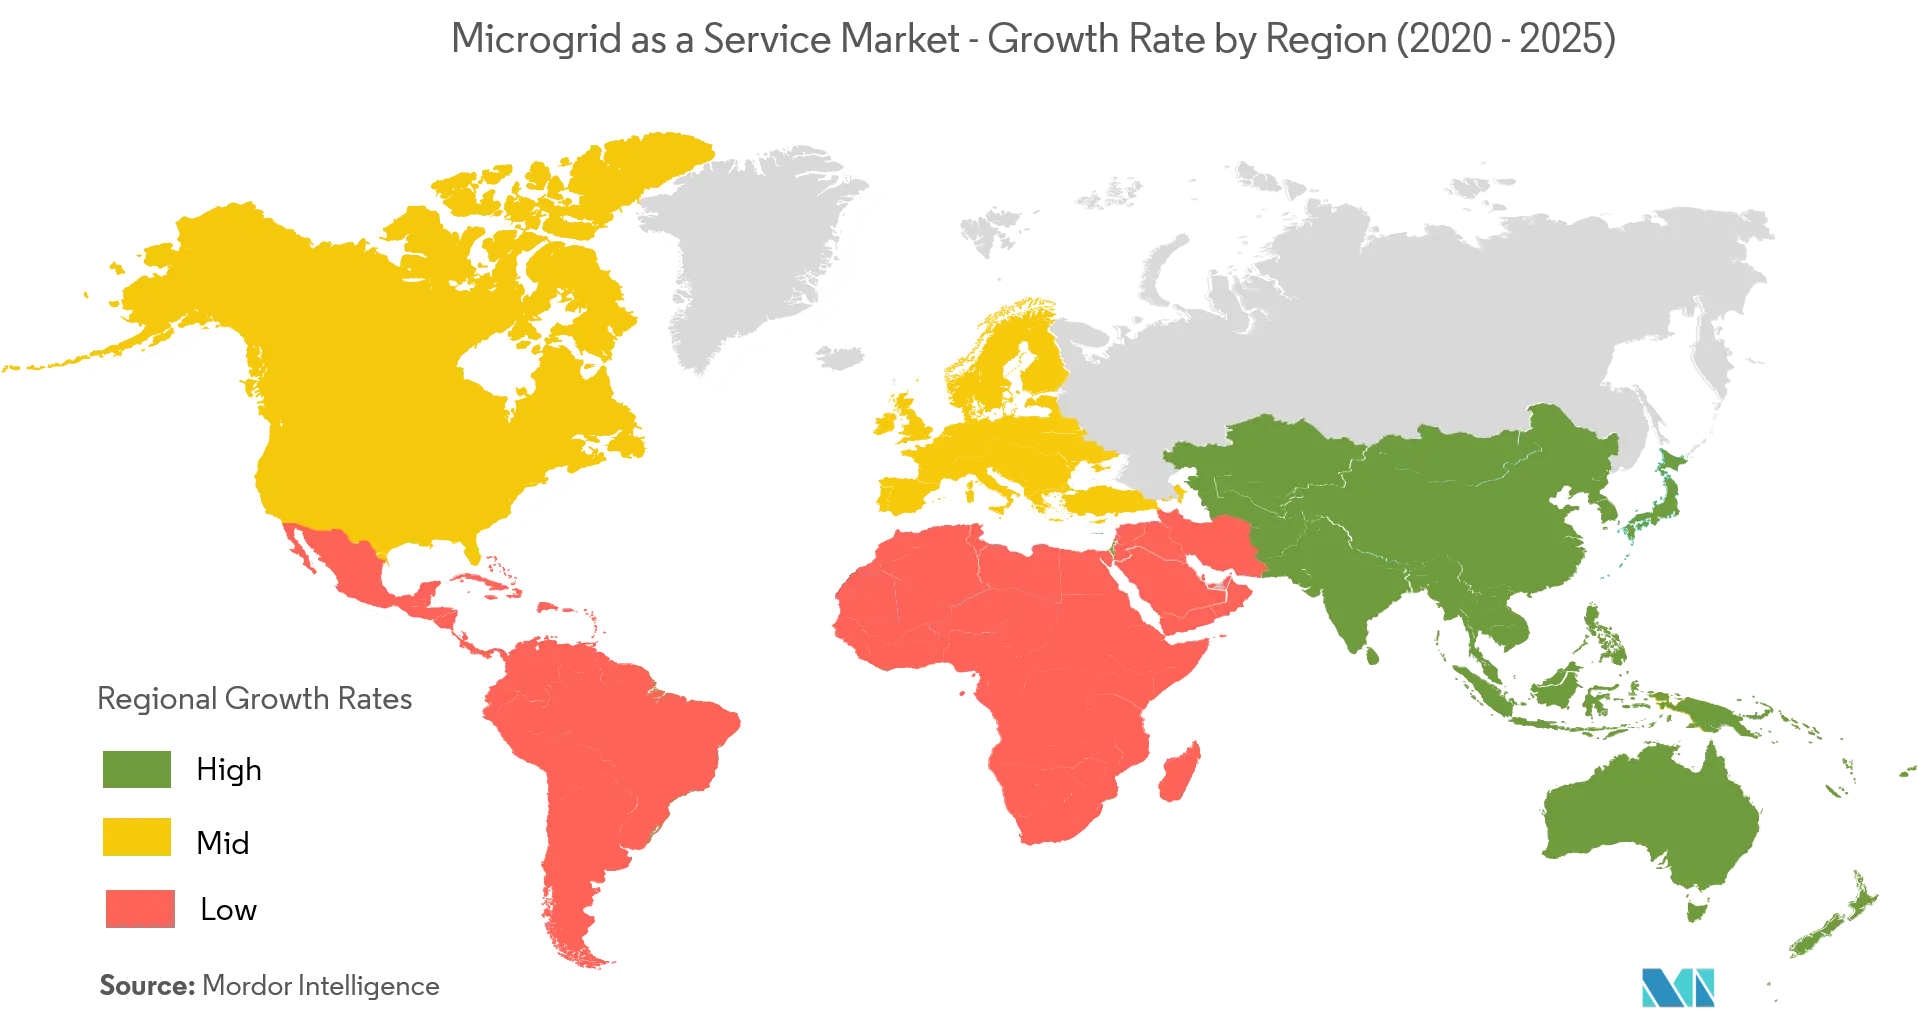 Microgrid như một thị trường dịch vụ - Tốc độ tăng trưởng theo khu vực (2020 - 2025)